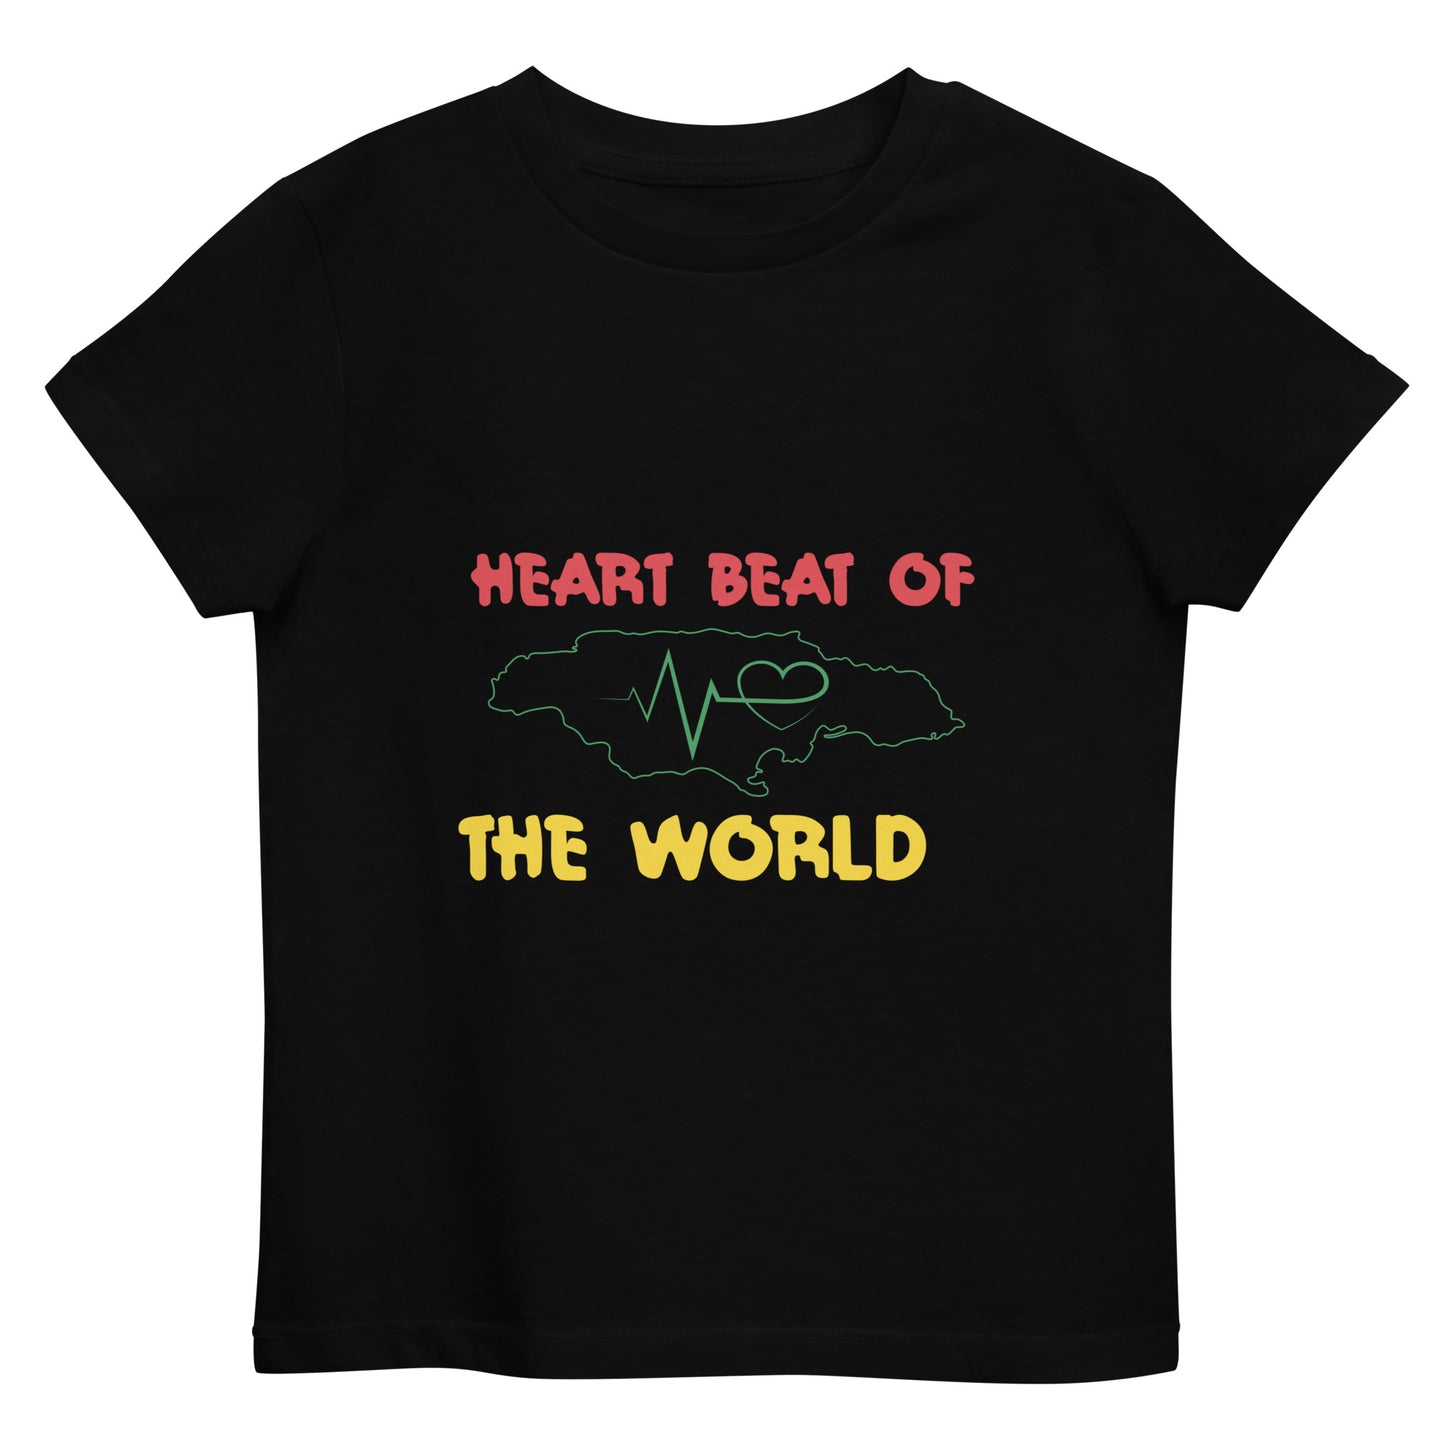 Organic cotton kids "Heartbeat" t-shirt